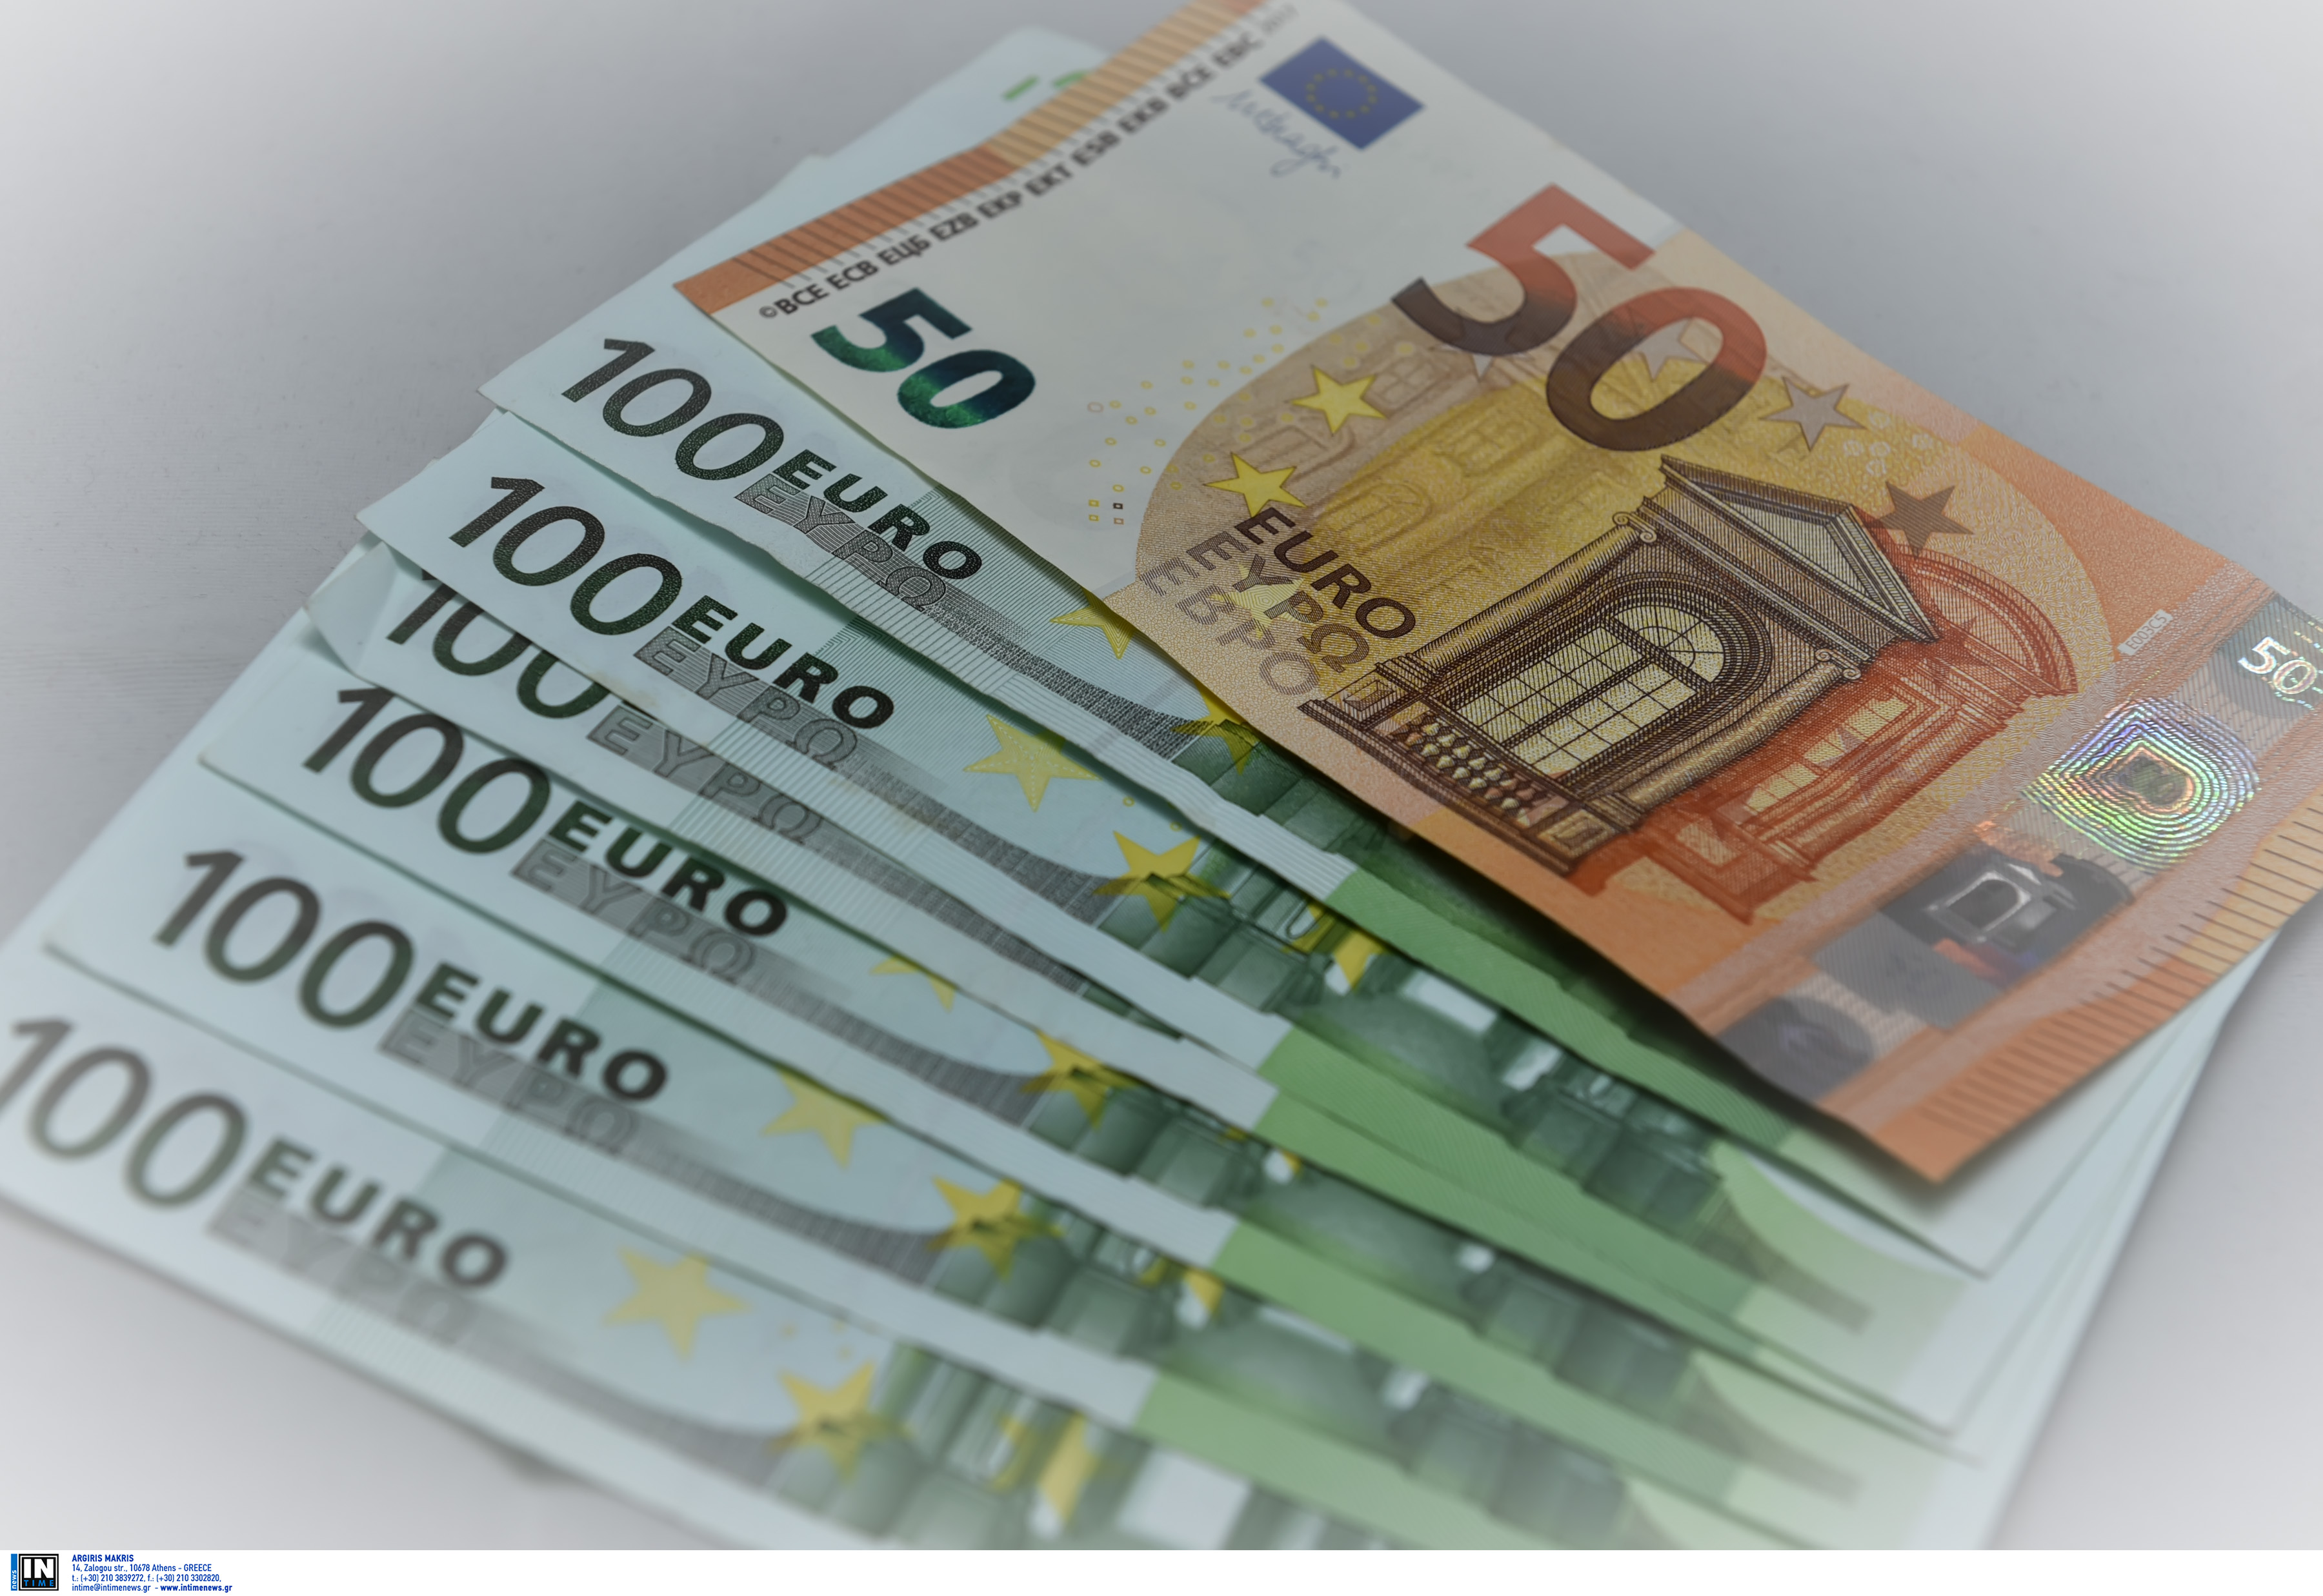 Επίδομα 400 ευρώ: Την άμεση καταβολή του ζητούν εννέα επιστημονικοί σύλλογοι της χώρας